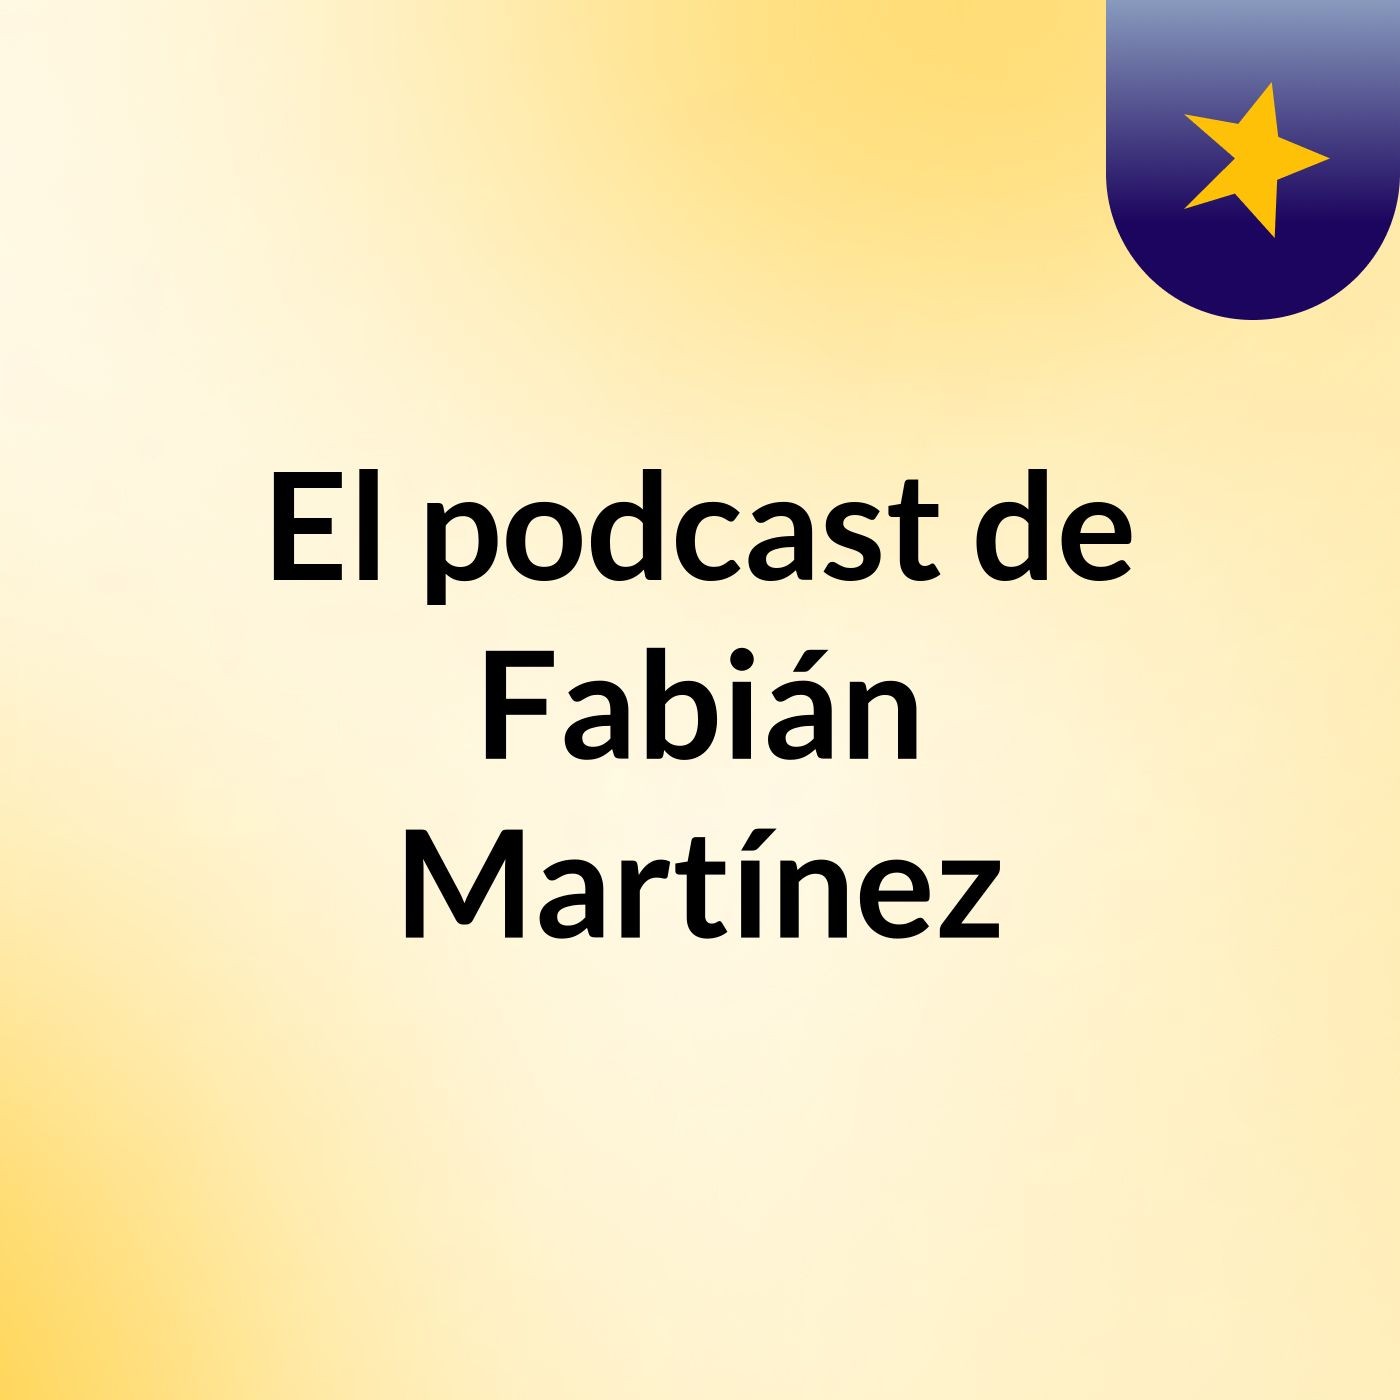 Episodio 16 - El podcast de Fabián Martínez